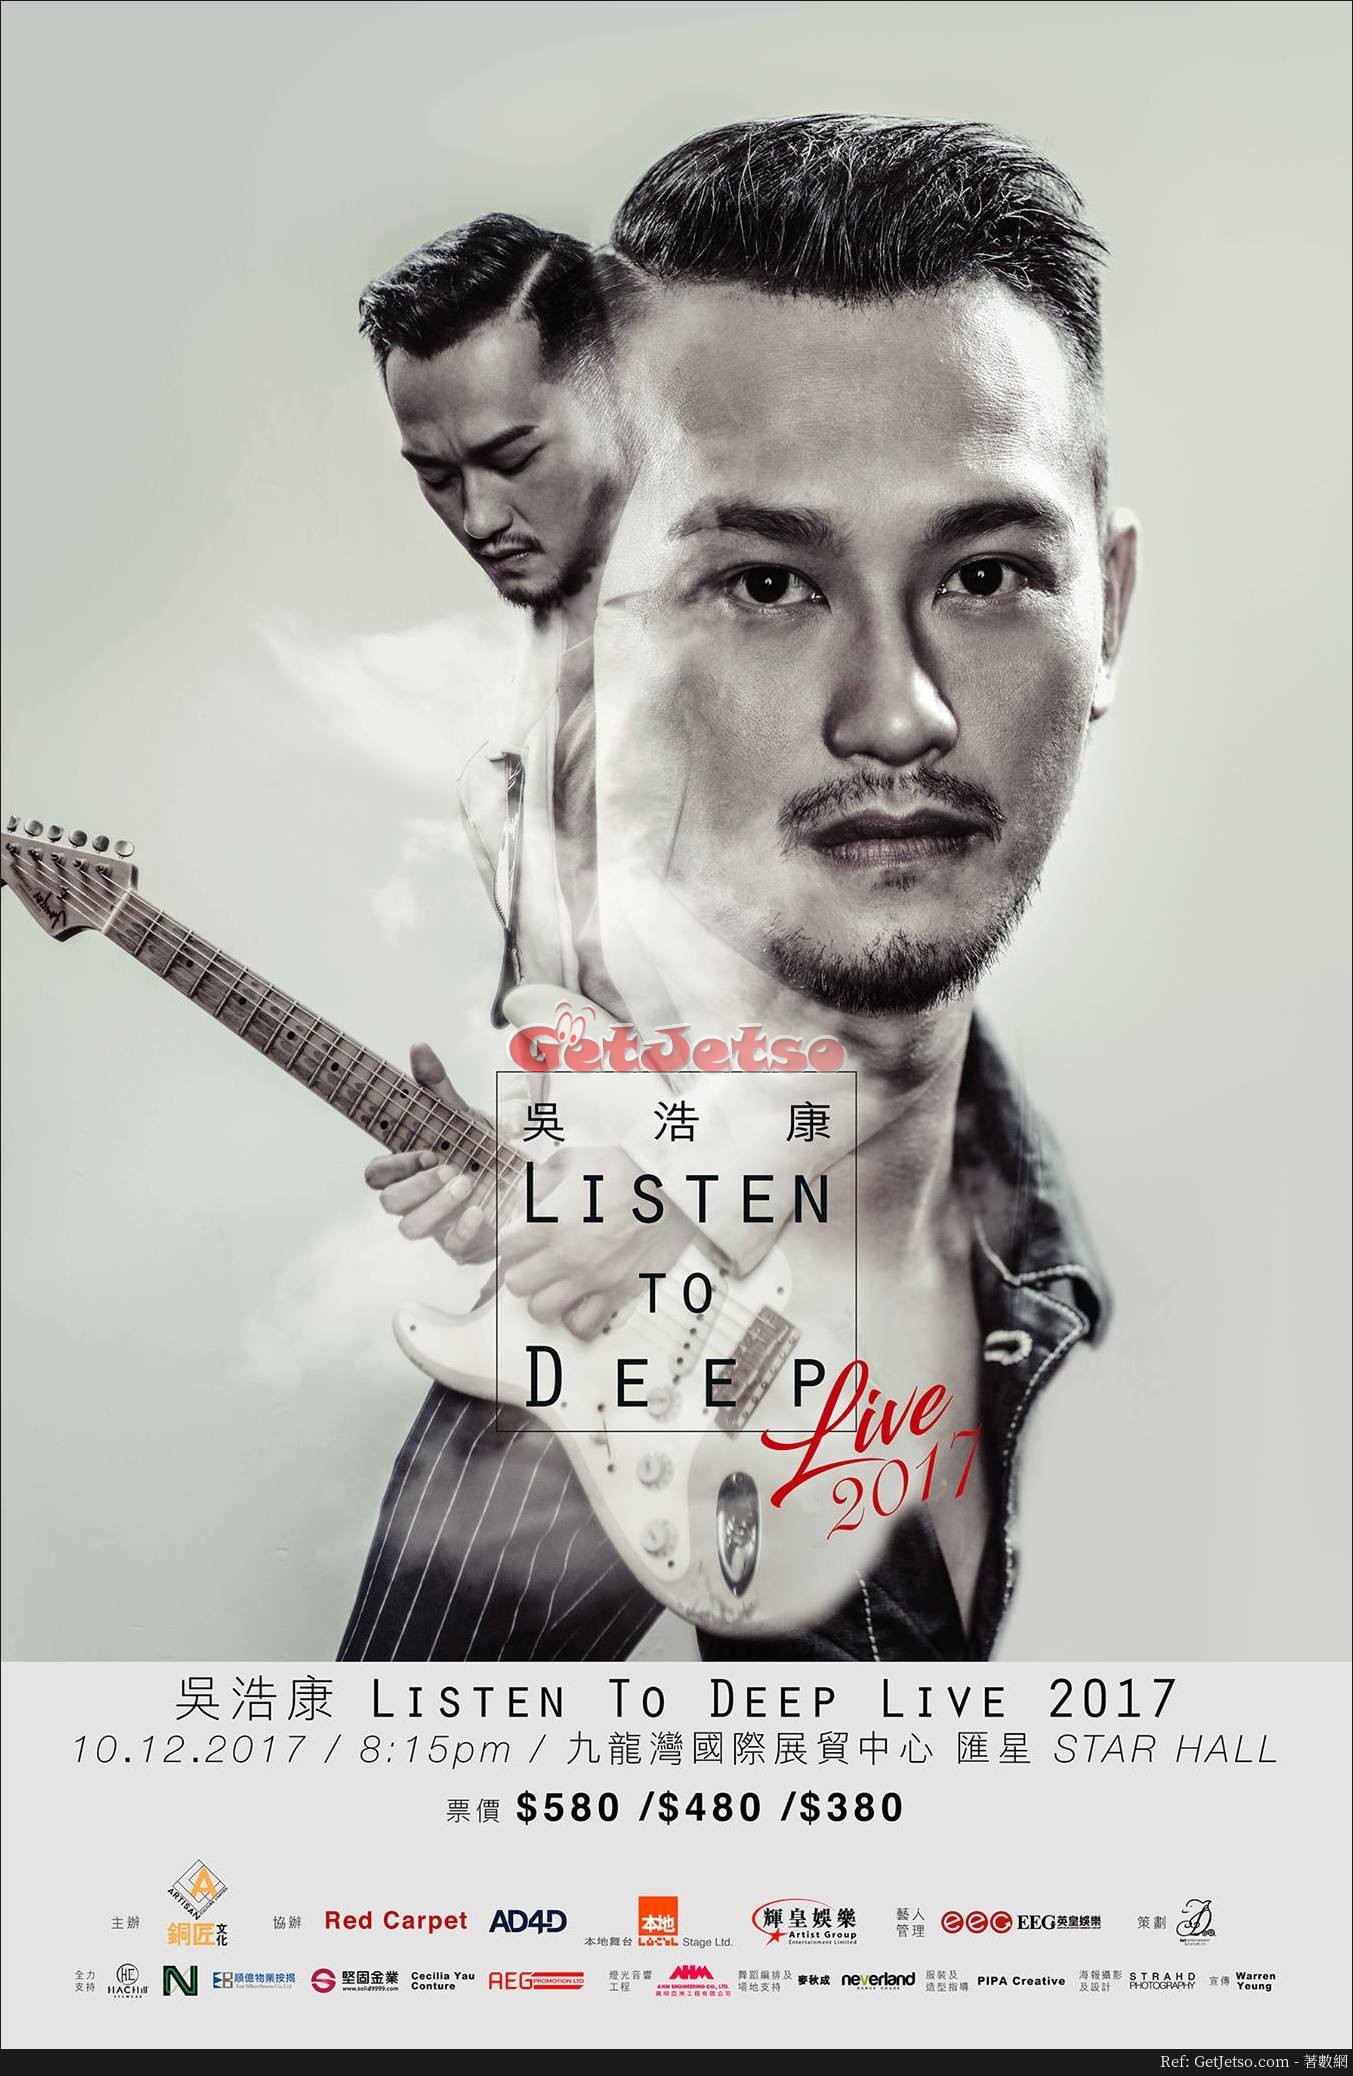 吳浩康LISTEN TO DEEP LIVE 2017 優先訂票優惠(17年9月14-18日)圖片1